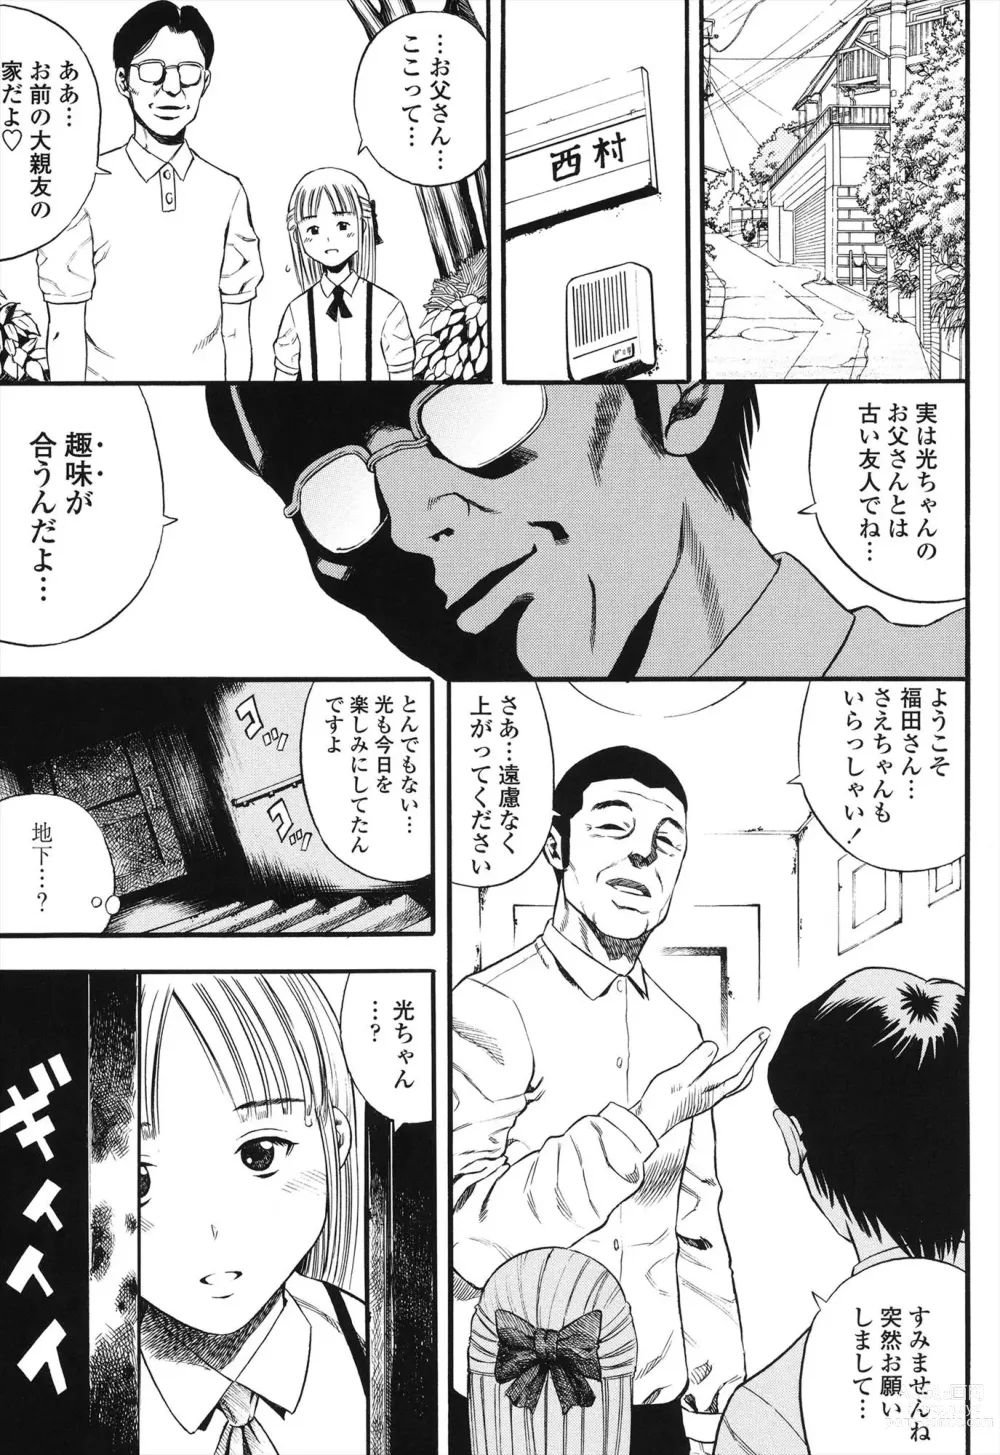 Page 11 of manga Shogaku Gakusei